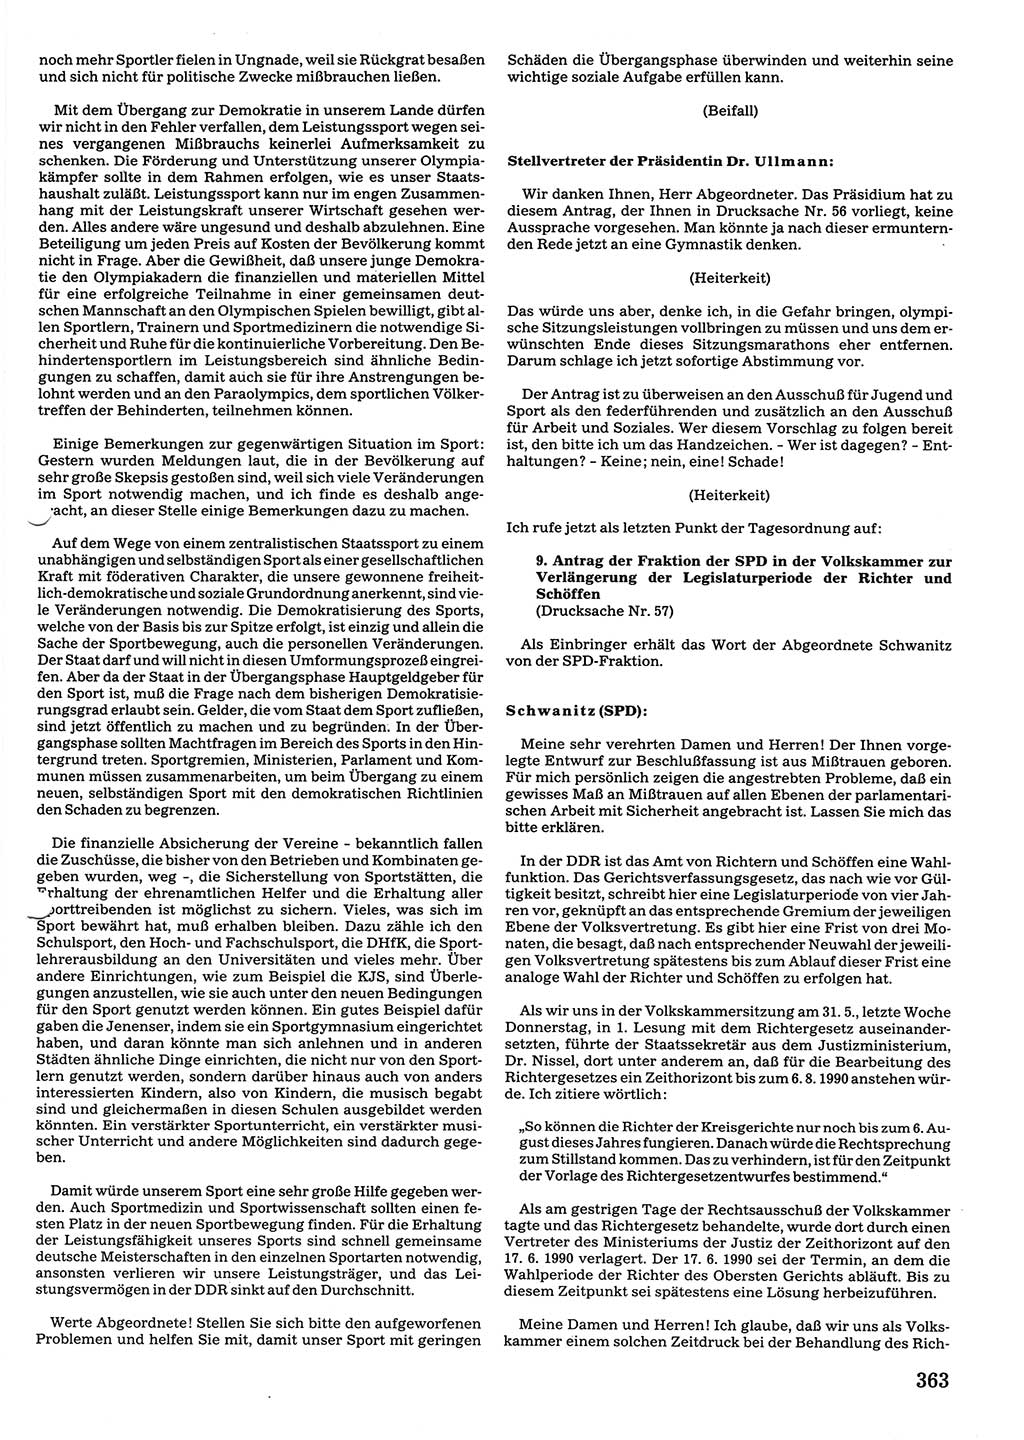 Tagungen der Volkskammer (VK) der Deutschen Demokratischen Republik (DDR), 10. Wahlperiode 1990, Seite 363 (VK. DDR 10. WP. 1990, Prot. Tg. 1-38, 5.4.-2.10.1990, S. 363)